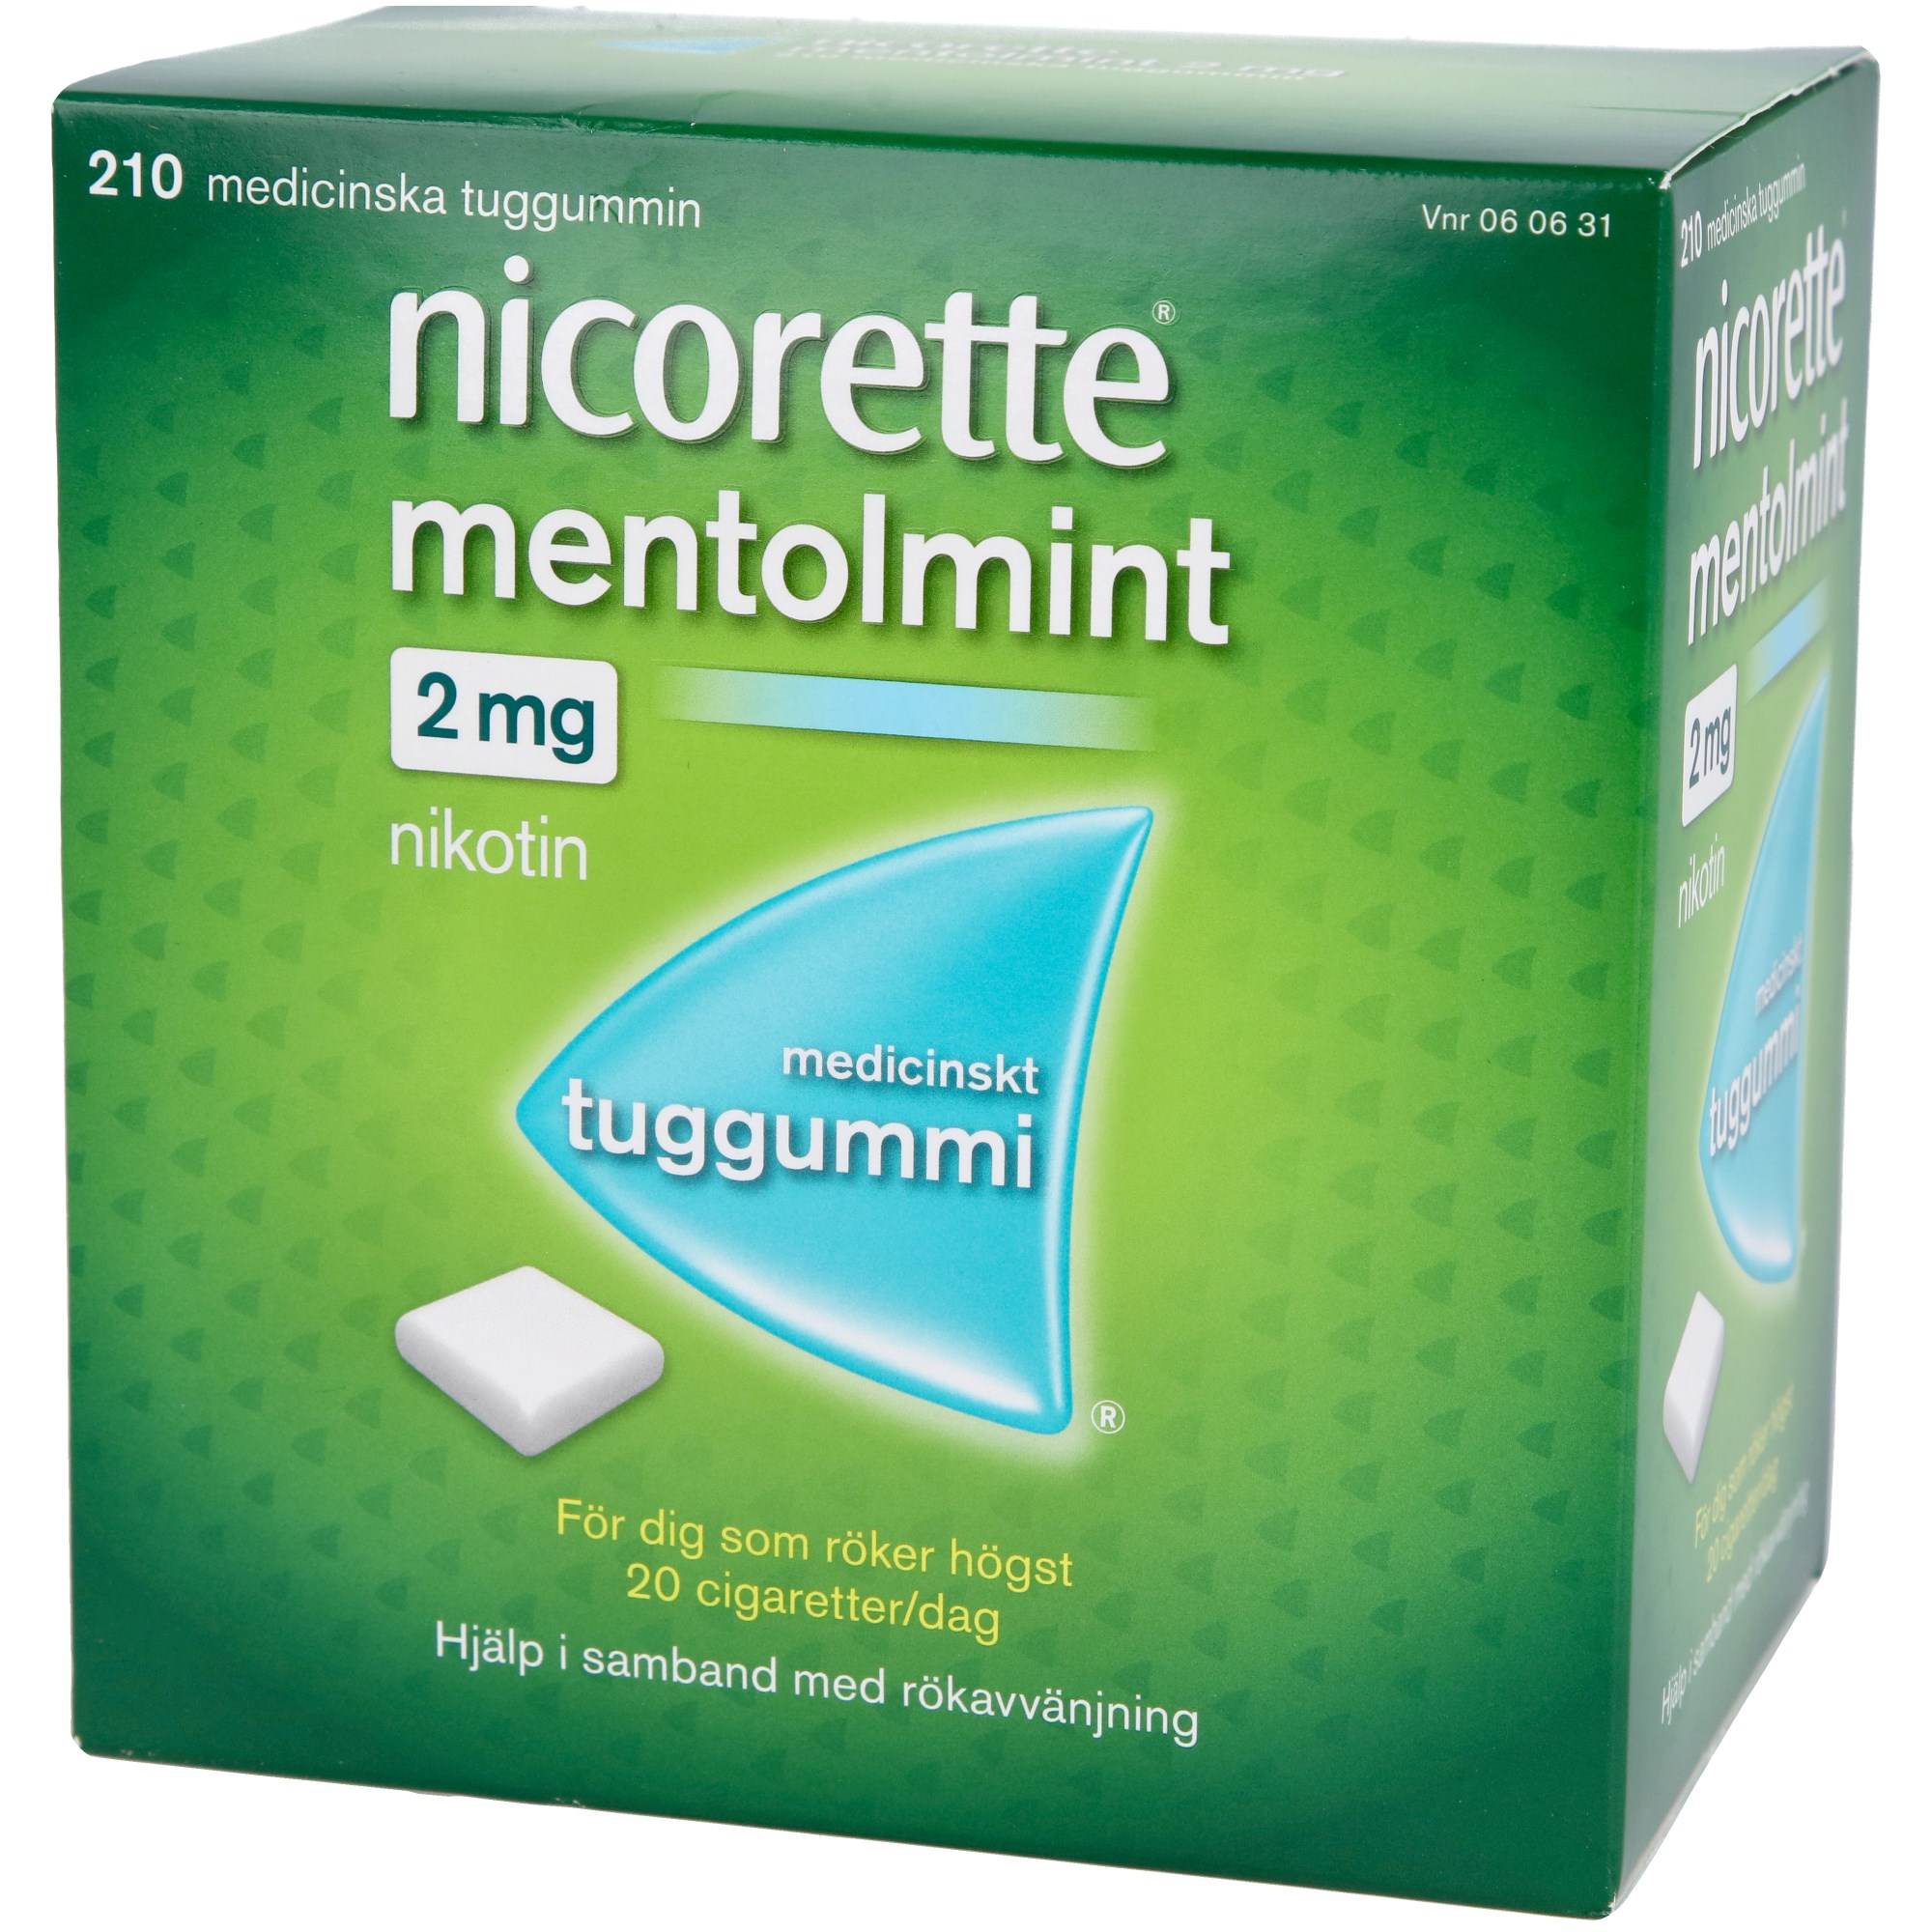 Läs mer om Nicorette Medicinskt tuggummi Mentholmint 2mg 210 st